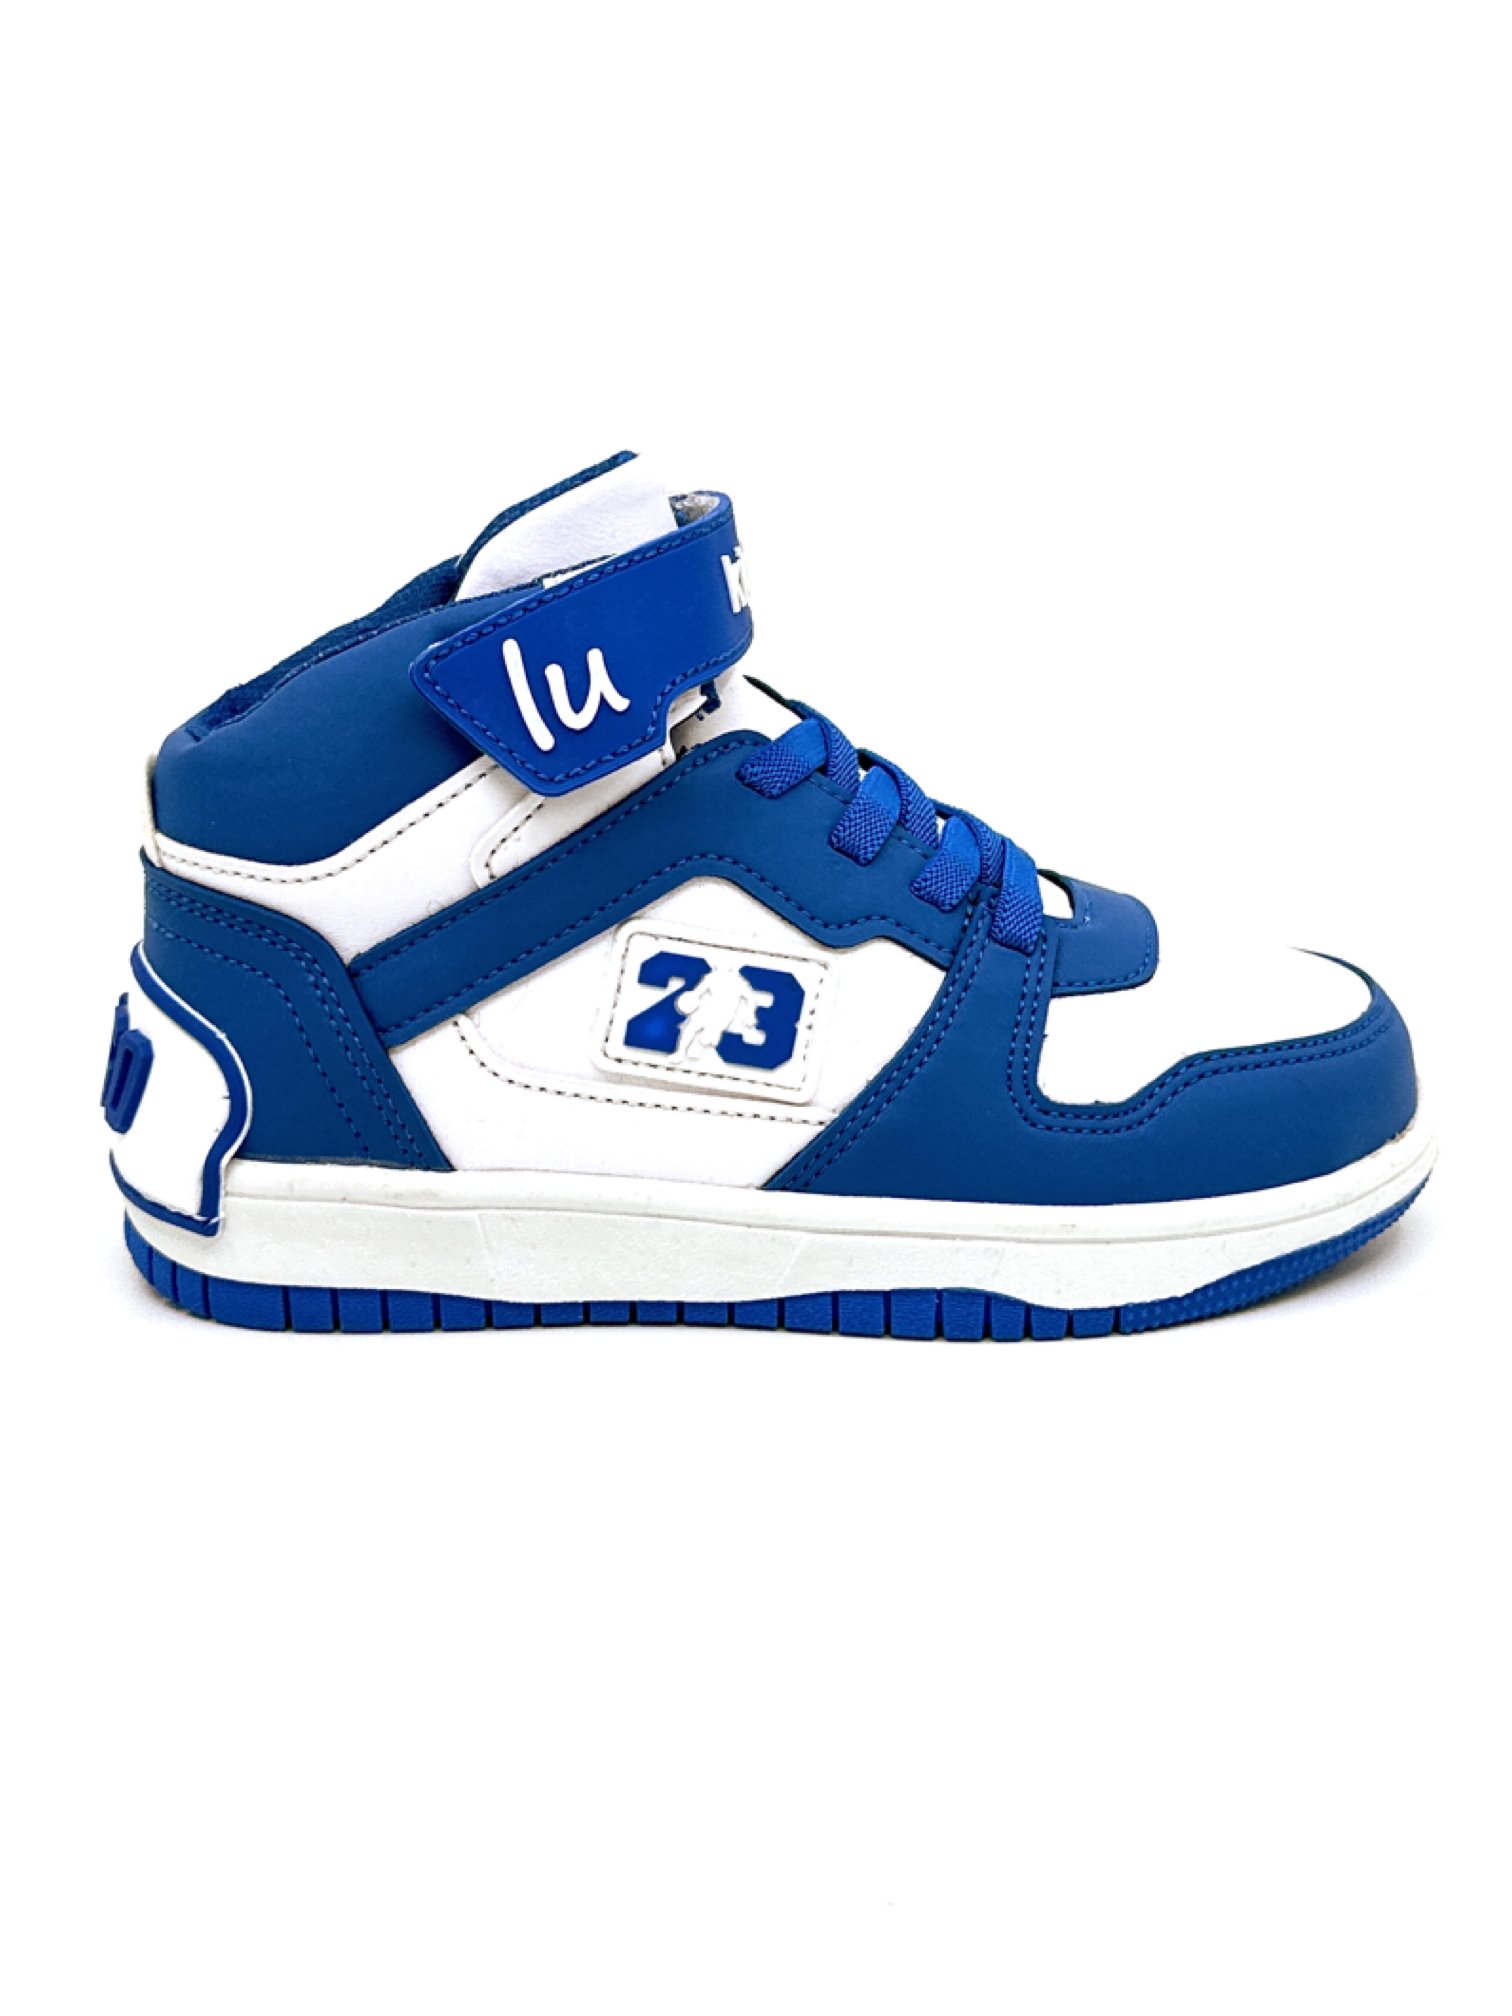 Europaspor.com'da çocuklar için özel olarak tasarlanmış LUGO 2023 Mavi Beyaz  Ortopedik Boğazlı Sneaker Ayakkabı'yı keşfedin! Kaliteli malzeme ve şık  tasarımıyla çocuklarınızın rahatlığını düşündük. Hemen inceleyin!